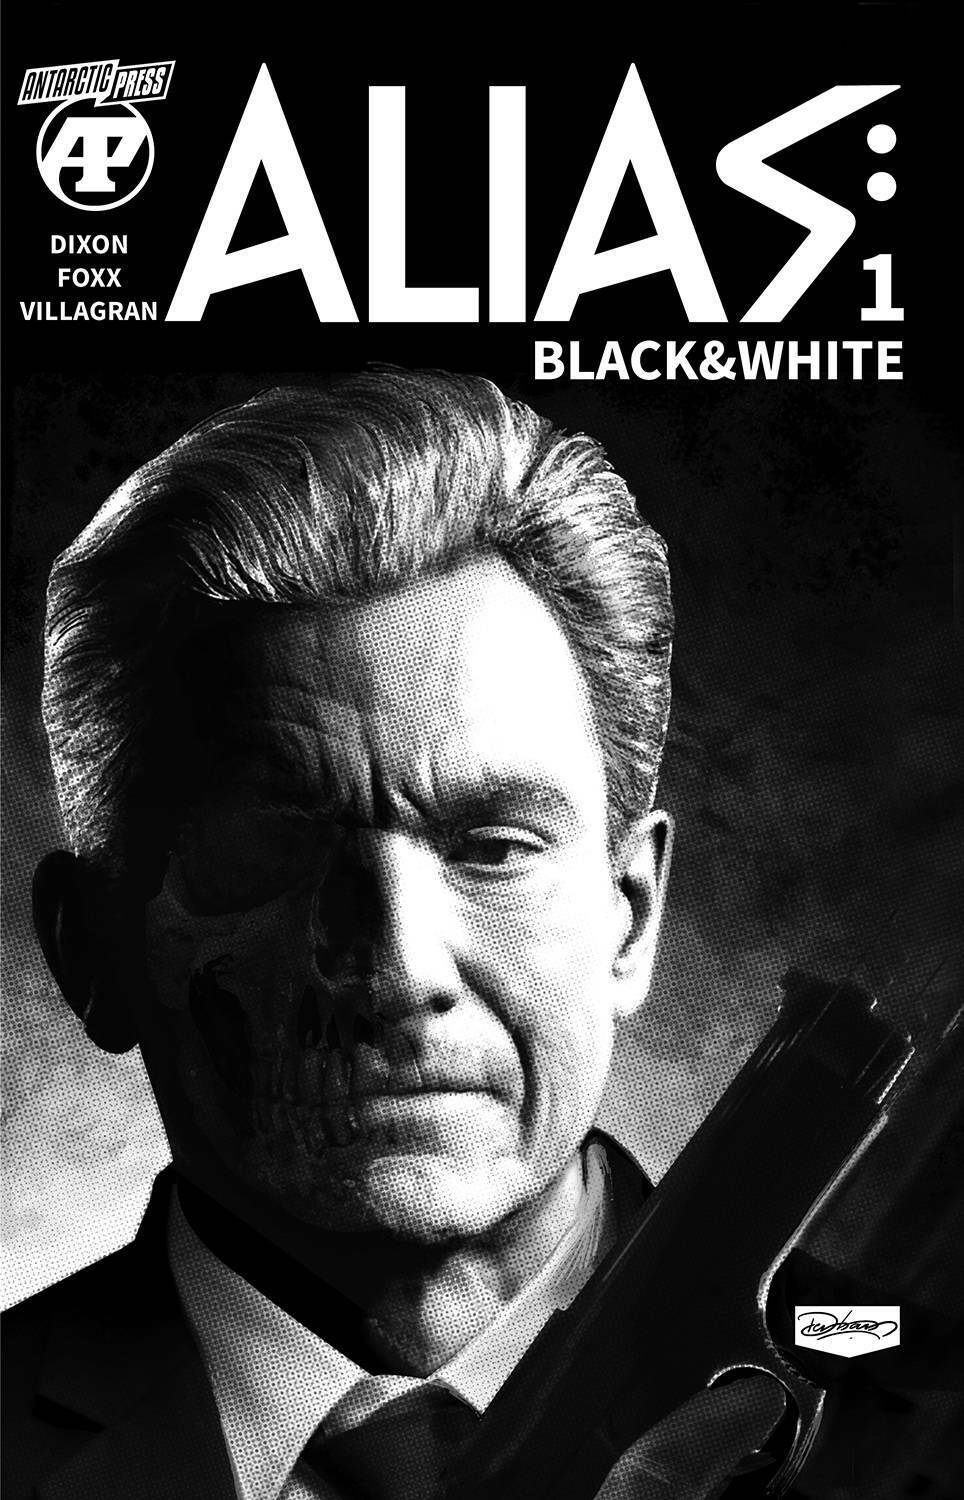 ALIAS BLACK & WHITE #1 DENHAM COVER ANTARCTIC PRESS COMICS INDY